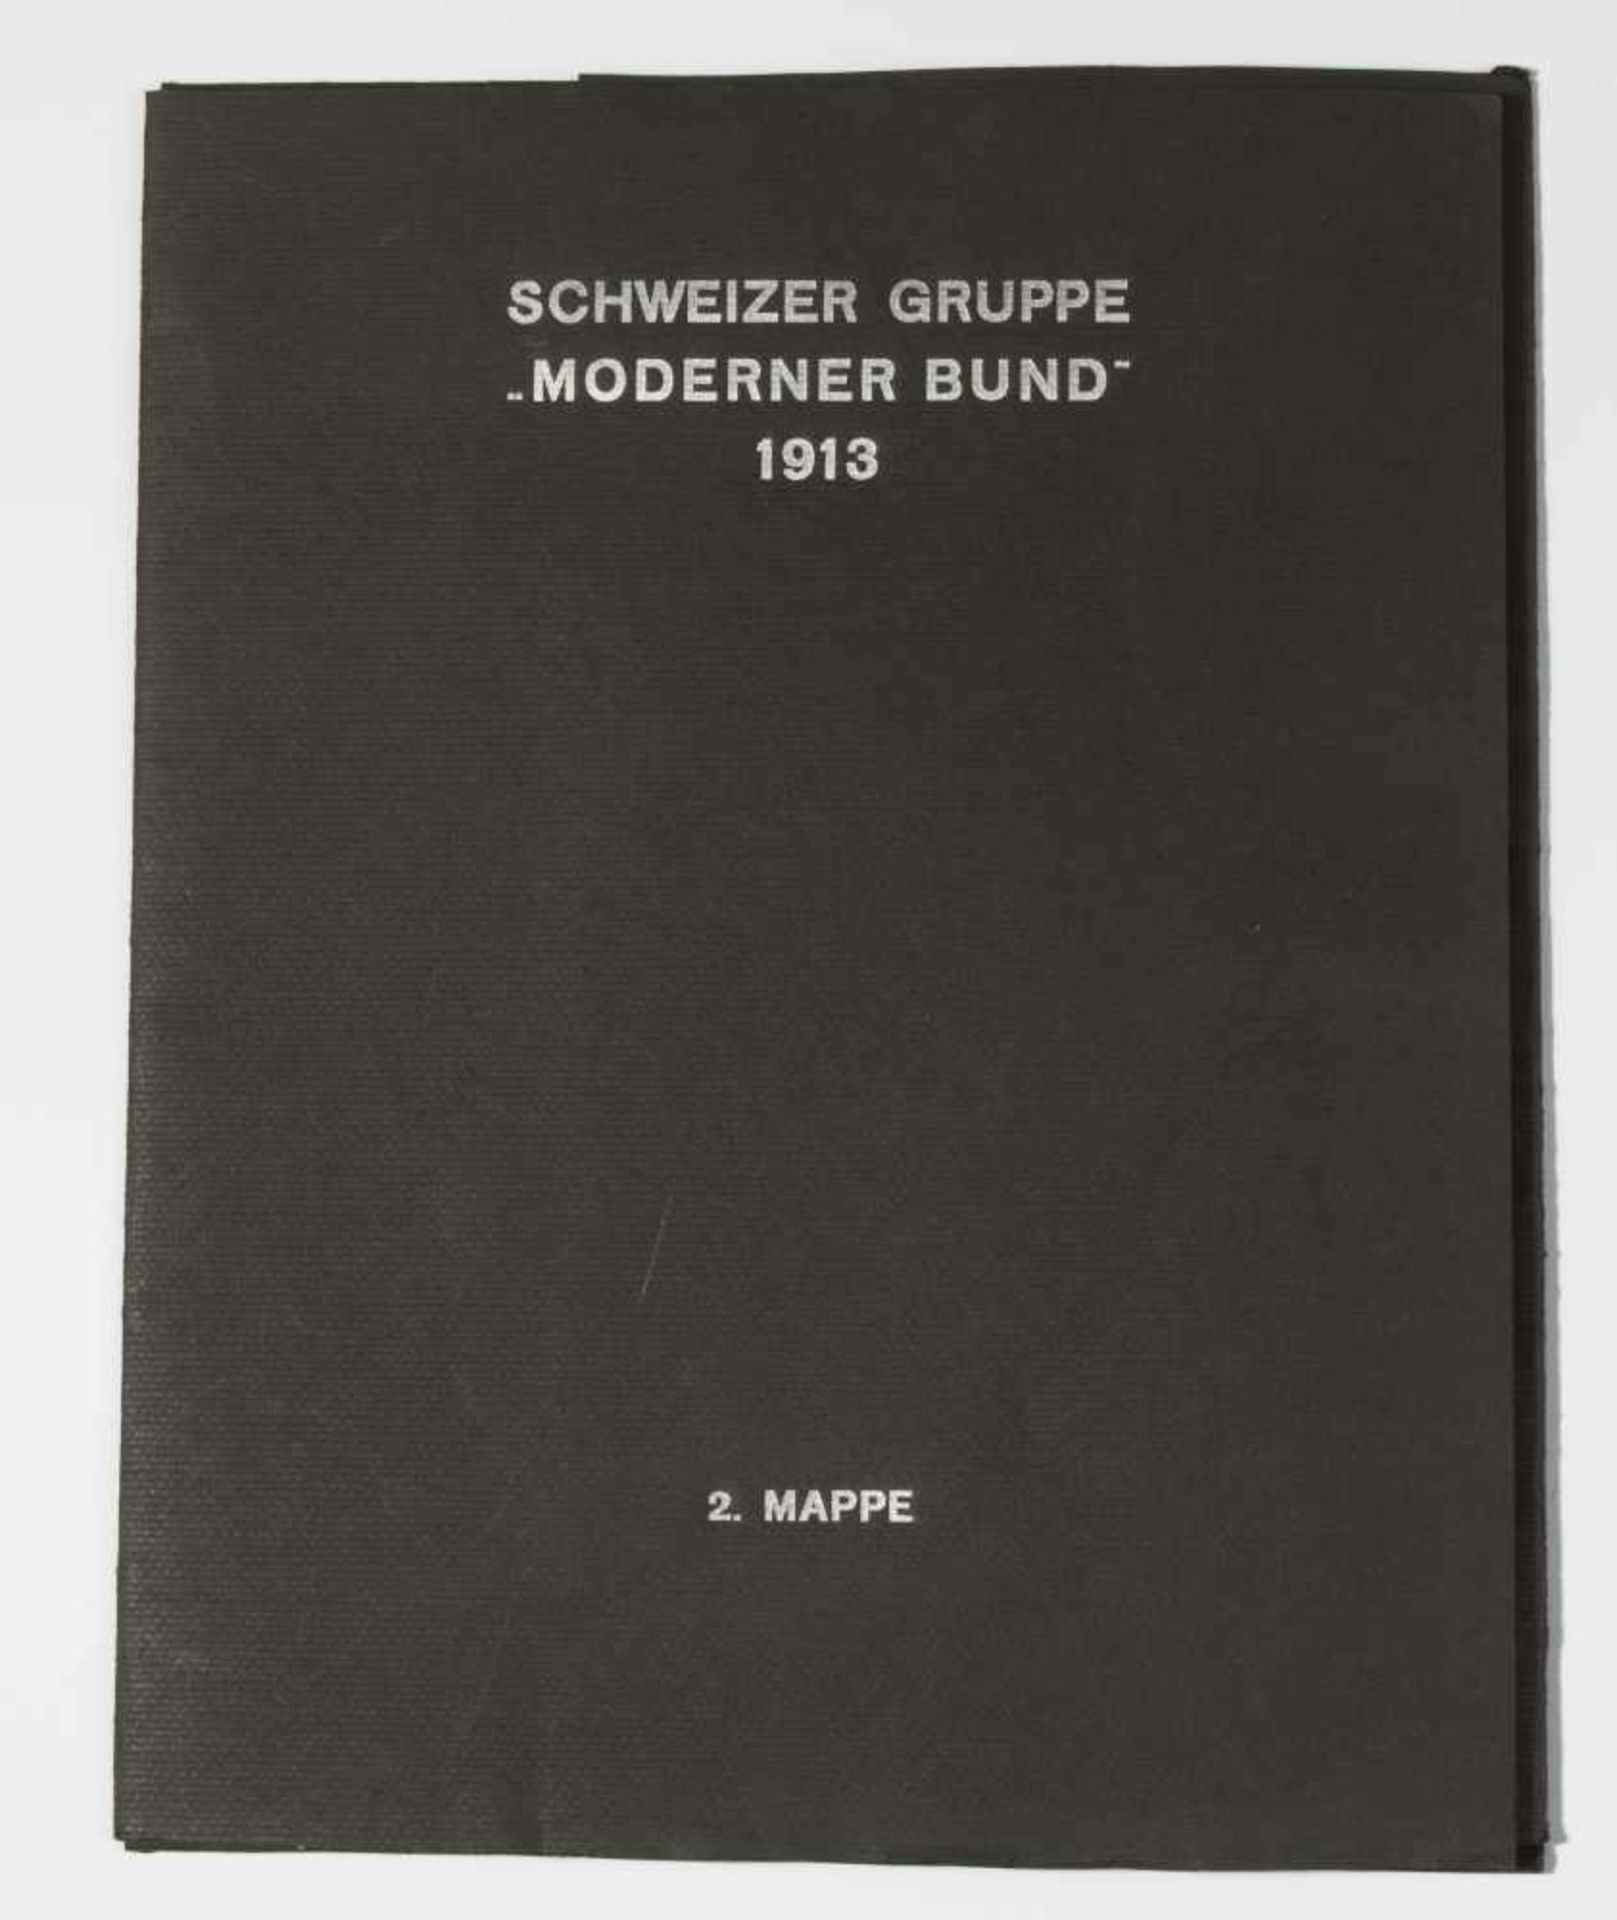 Schweizer Schule, 20.Jh.Schweizer Gruppe "Moderner Bund" 1913. Mappe mit schwarzem Umschlag - Bild 15 aus 29